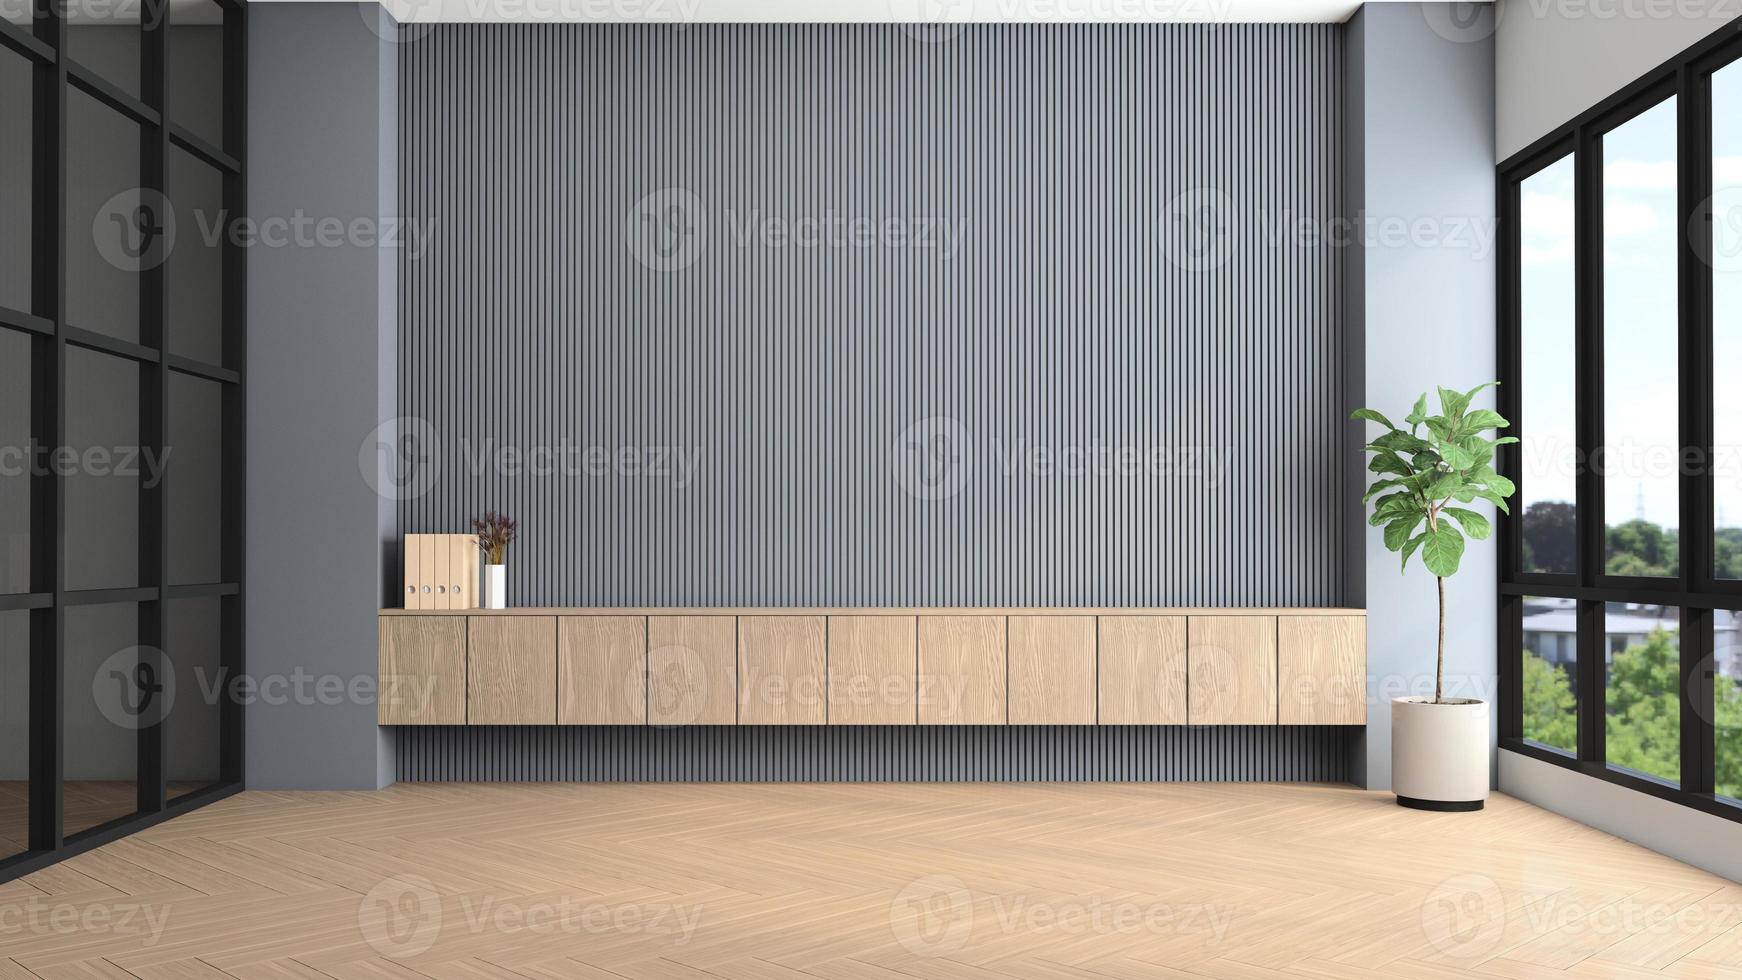 habitación vacía moderna con pared de listones grises y armario de madera empotrado. representación 3d foto